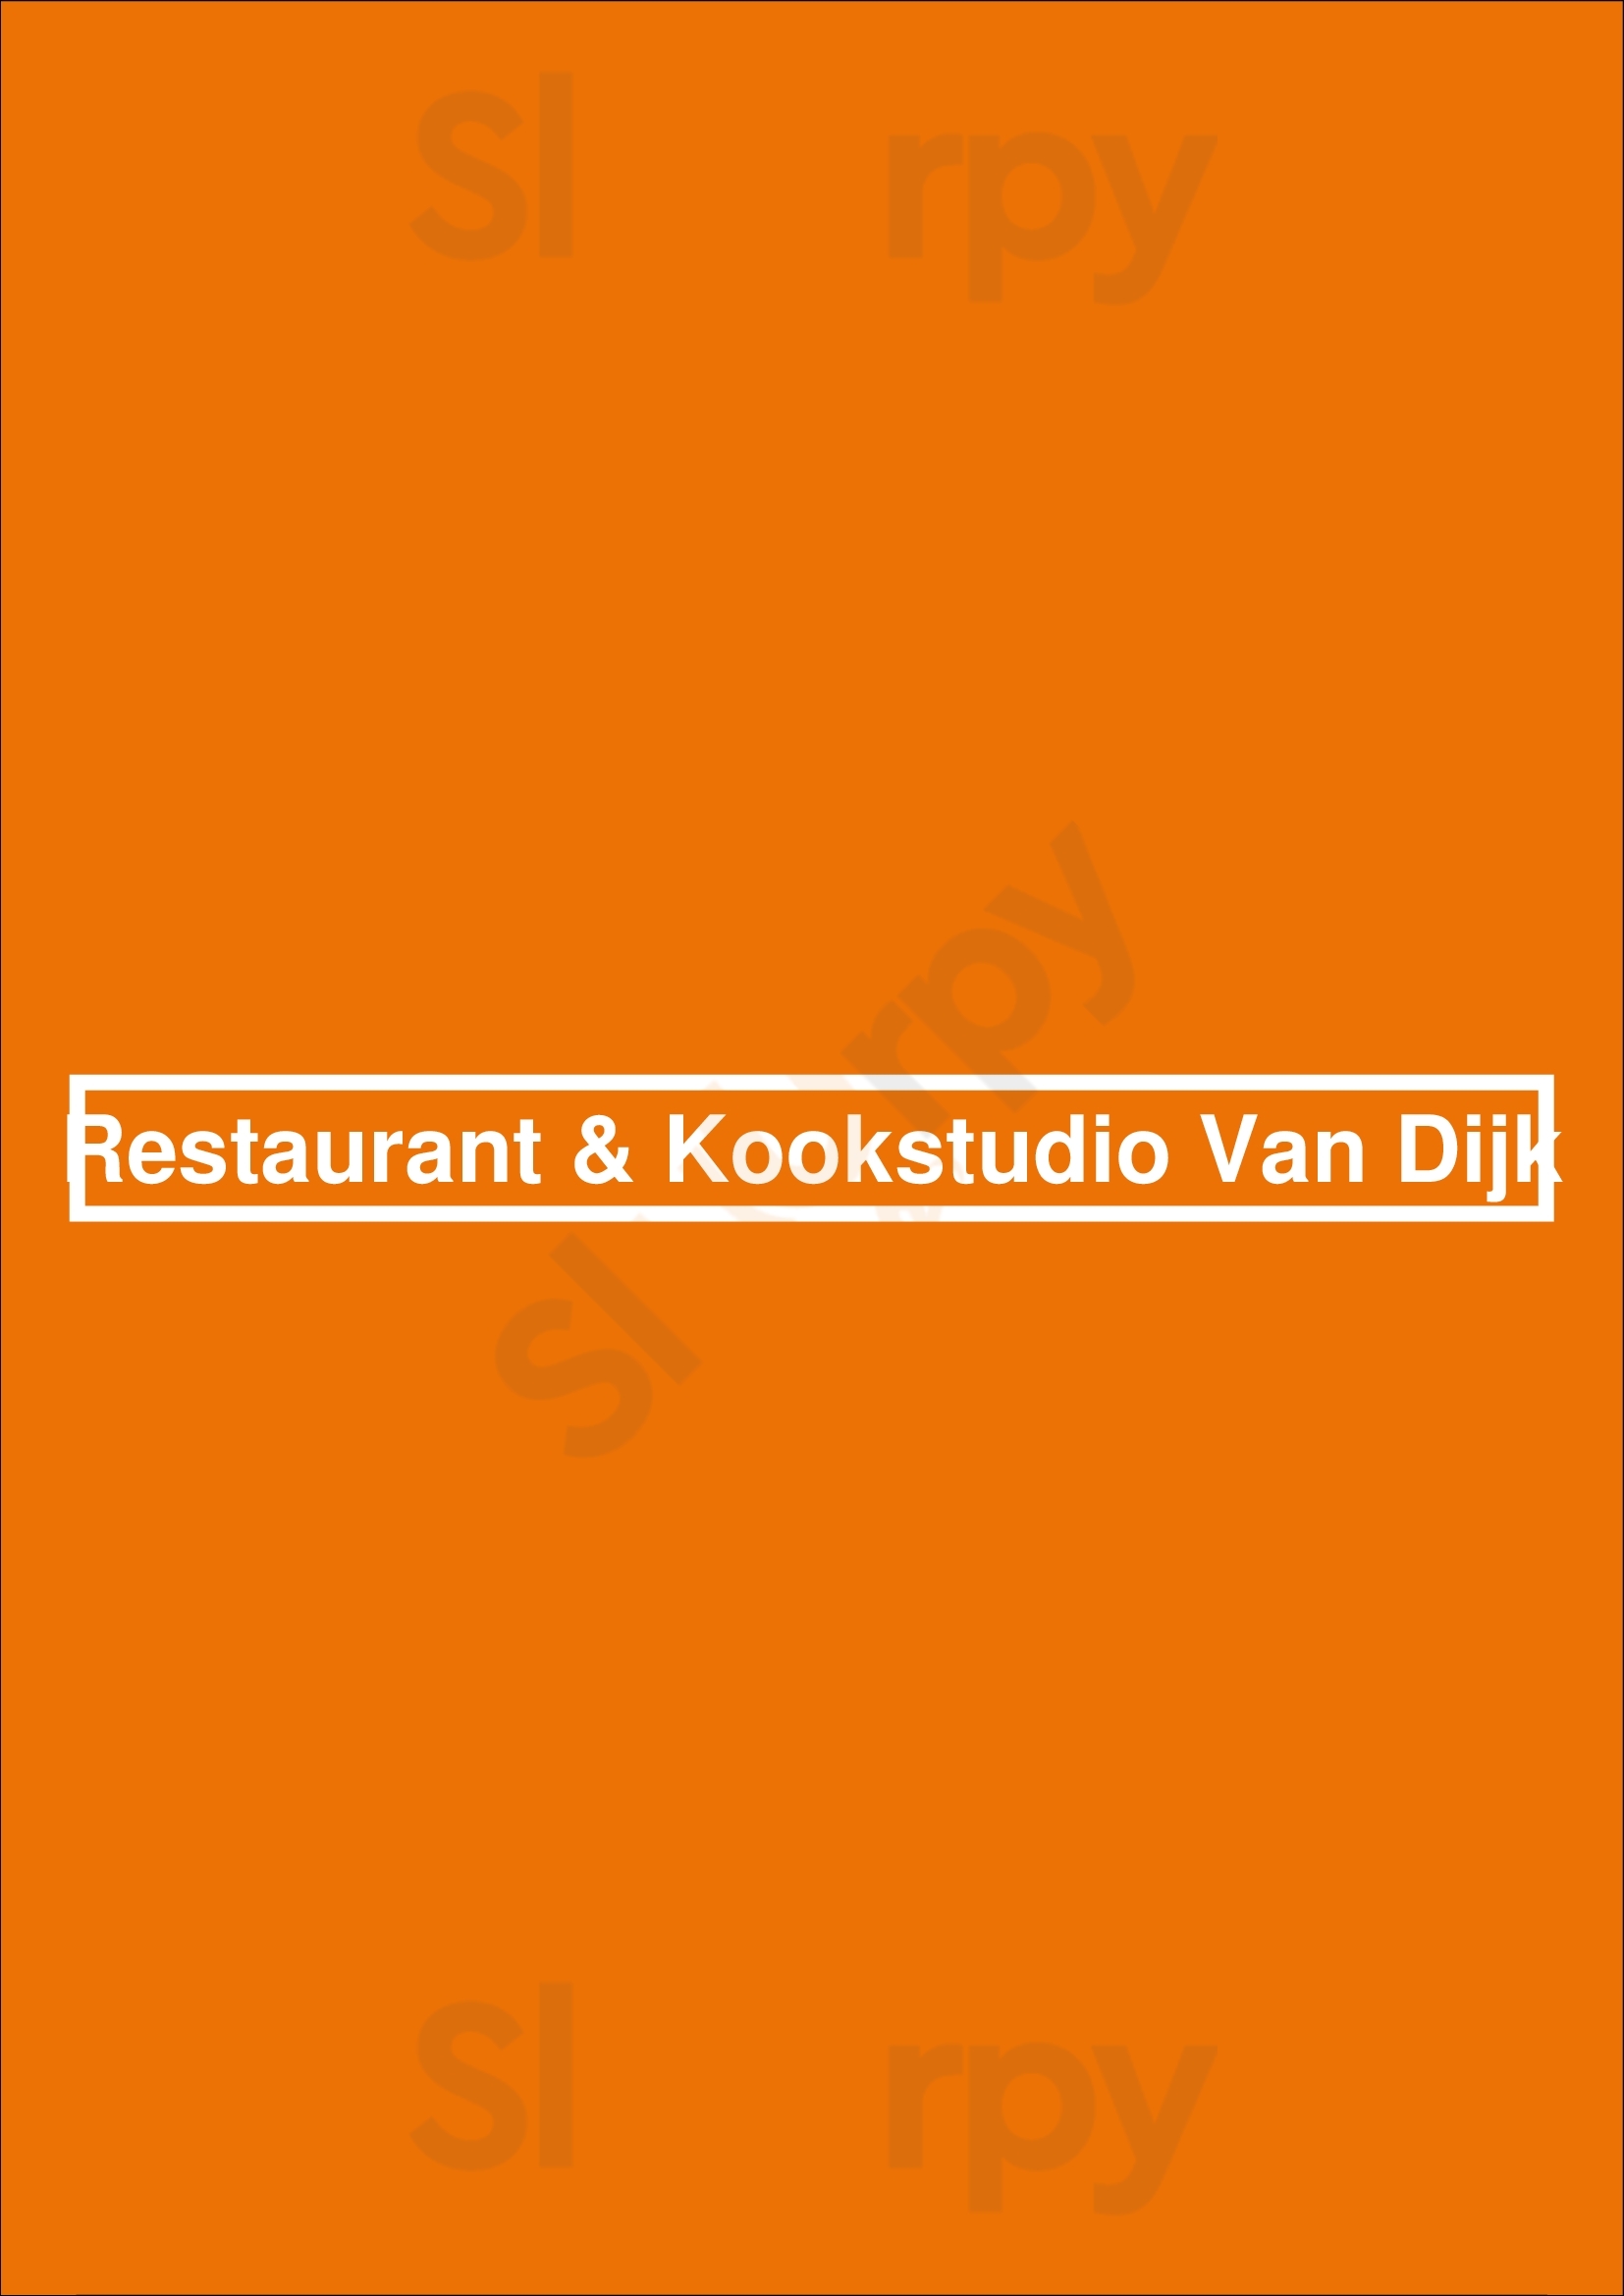 Restaurant & Kookstudio Van Dijk Heusden Menu - 1